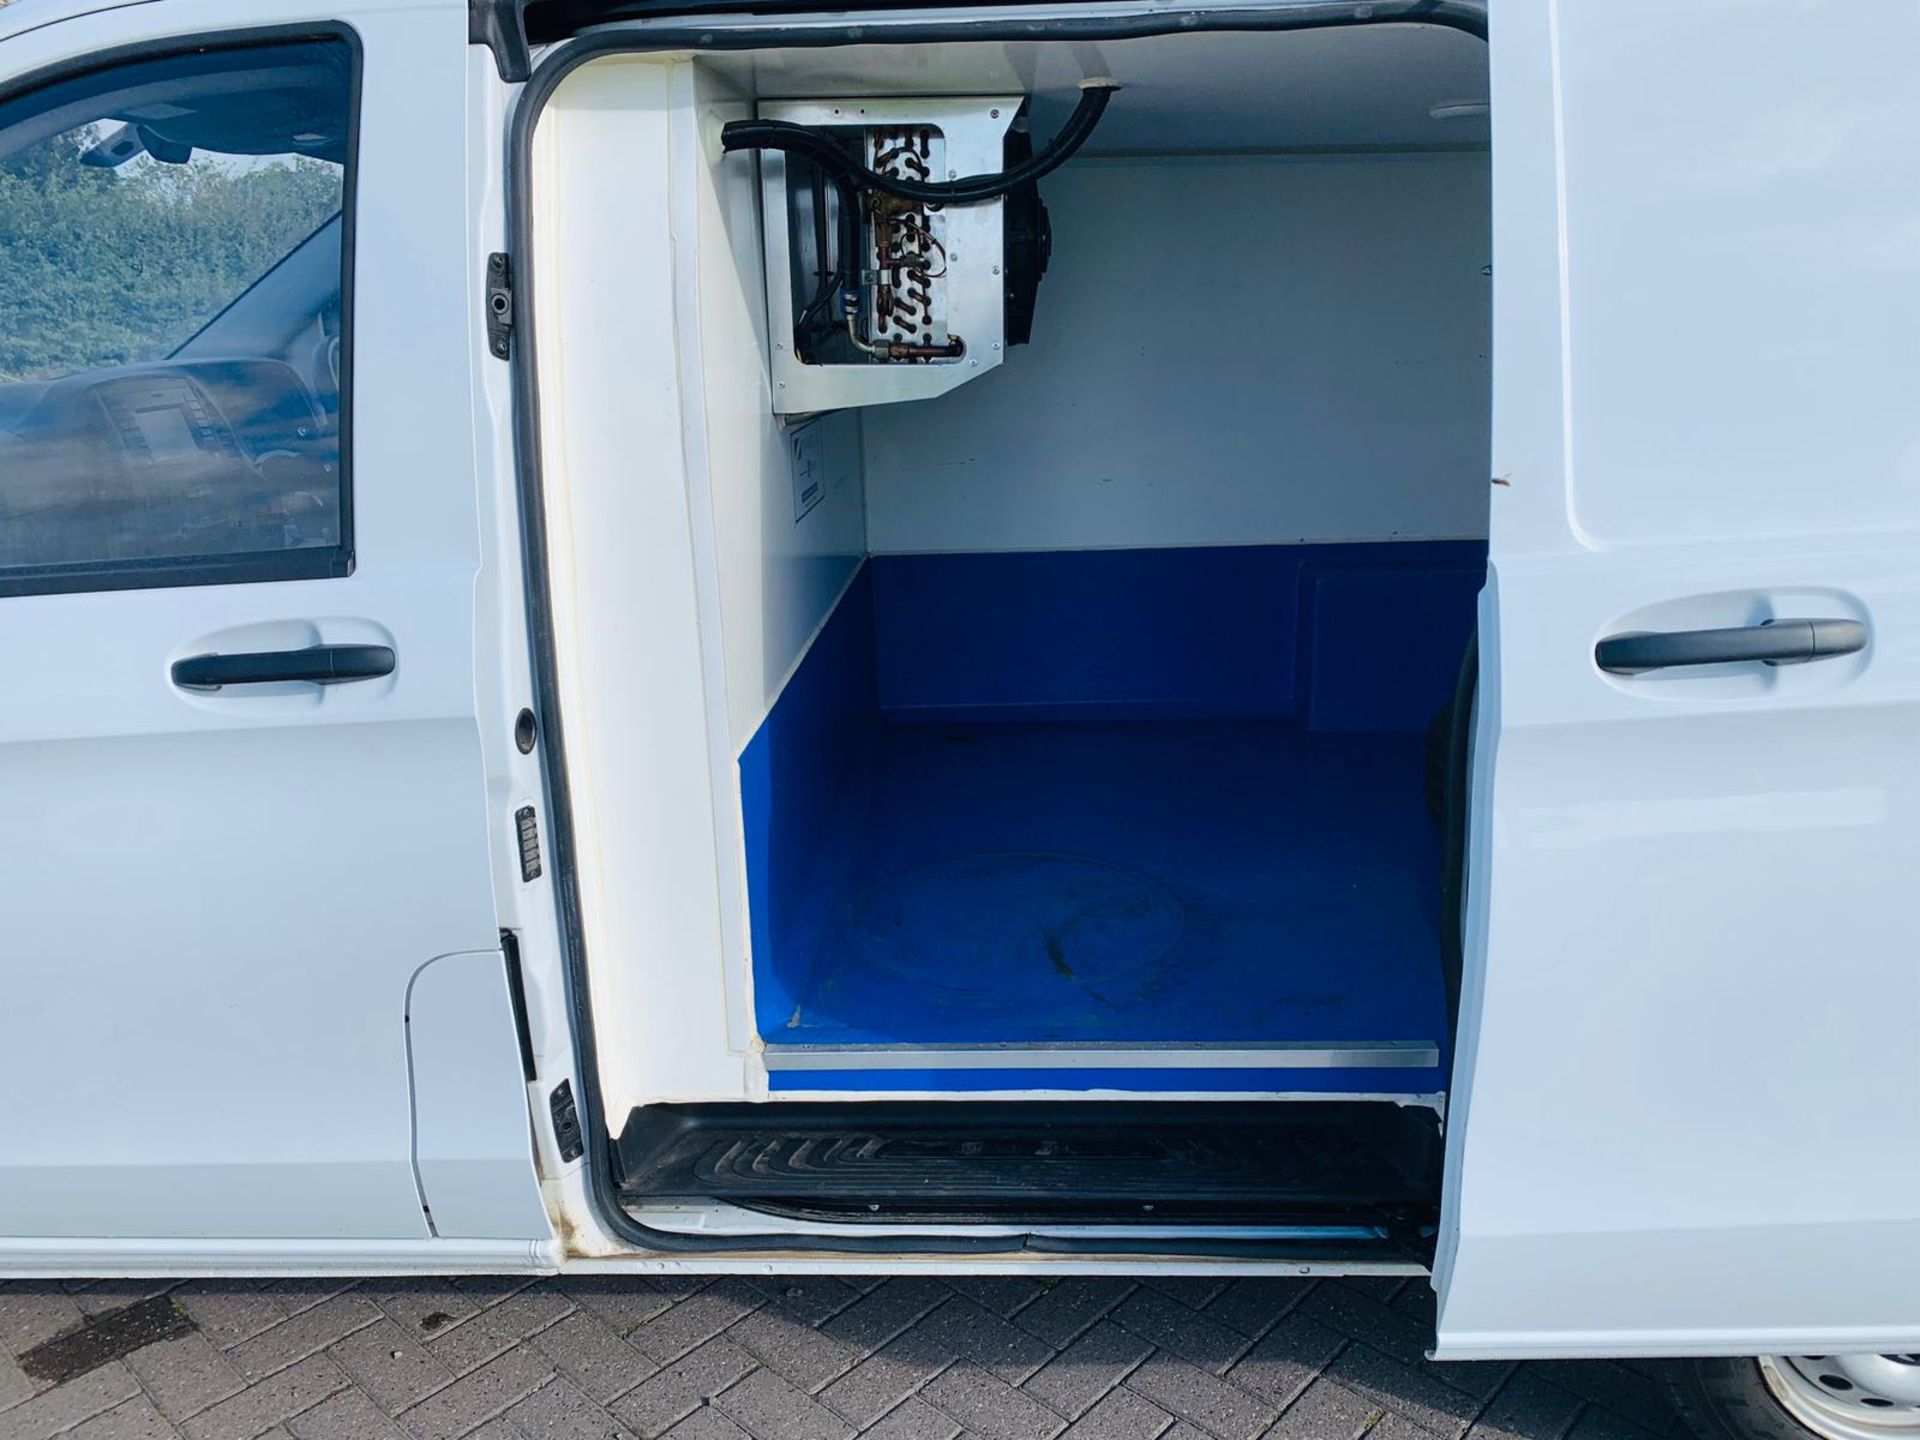 (RESERVE MET) Mercedes Vito 114 2.1 TD Bluetech Fridge Van - 2019 Model - Euro 6y - 1 Owner - Image 12 of 23